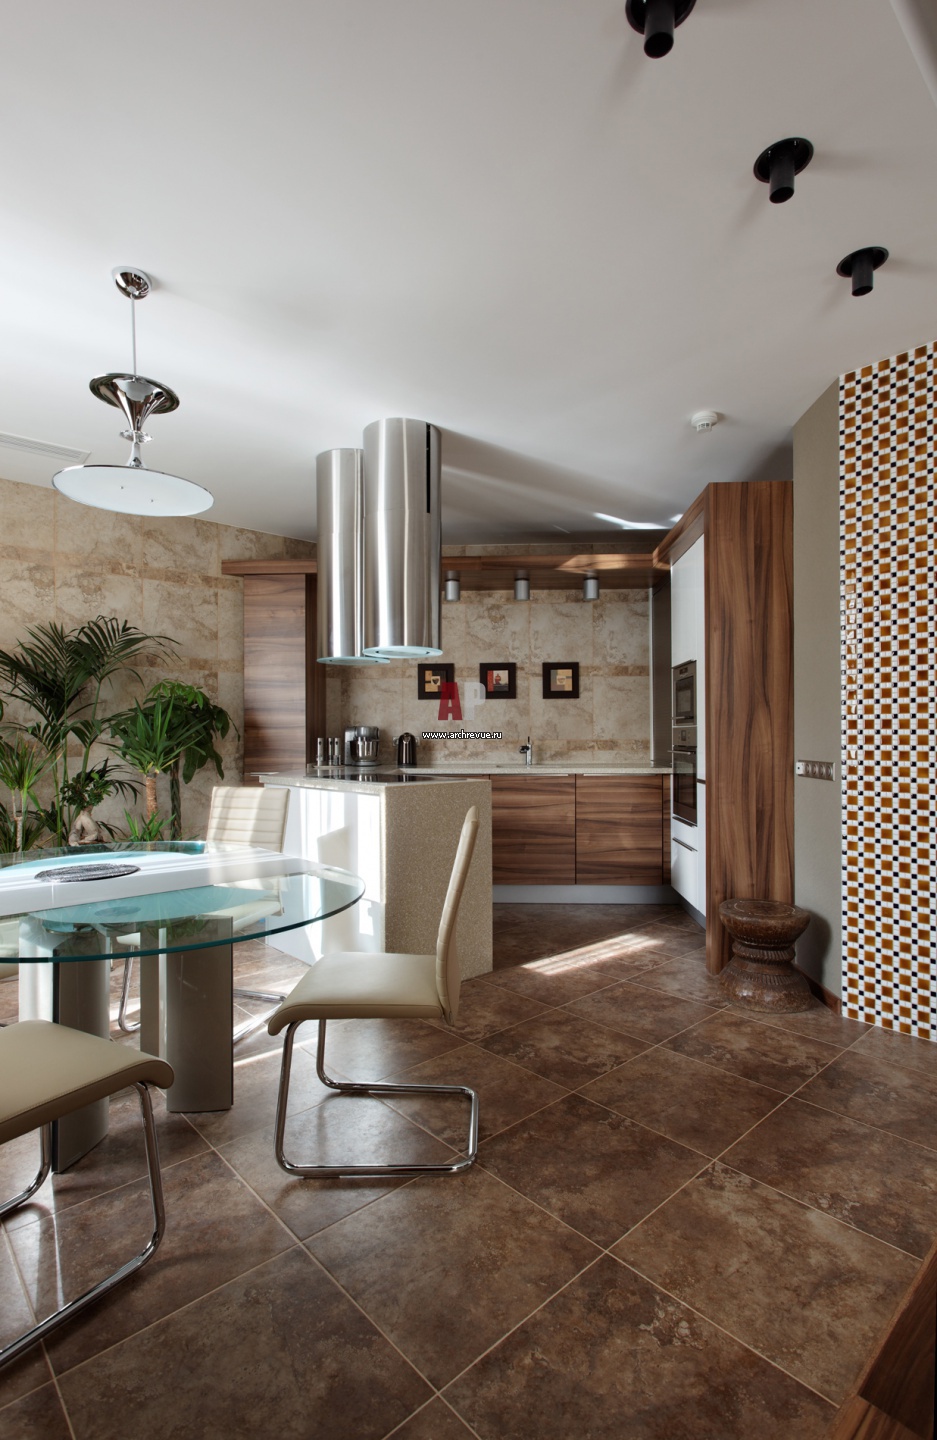 Интерьер гостиной с кухней в современном стиле 30 кв м